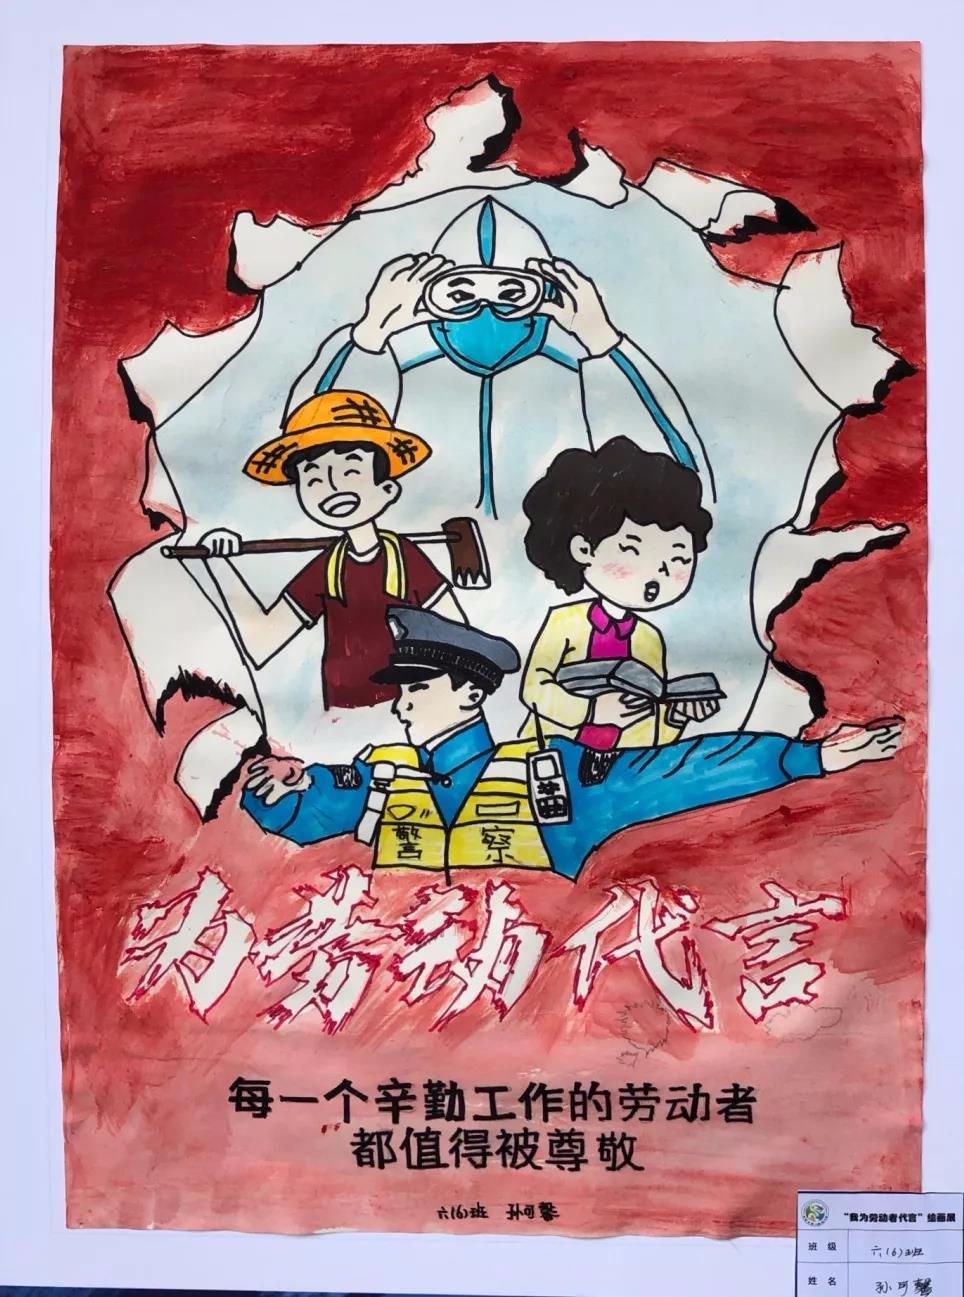 贵阳市第二实验小学"我为劳动者代言"主题绘画展